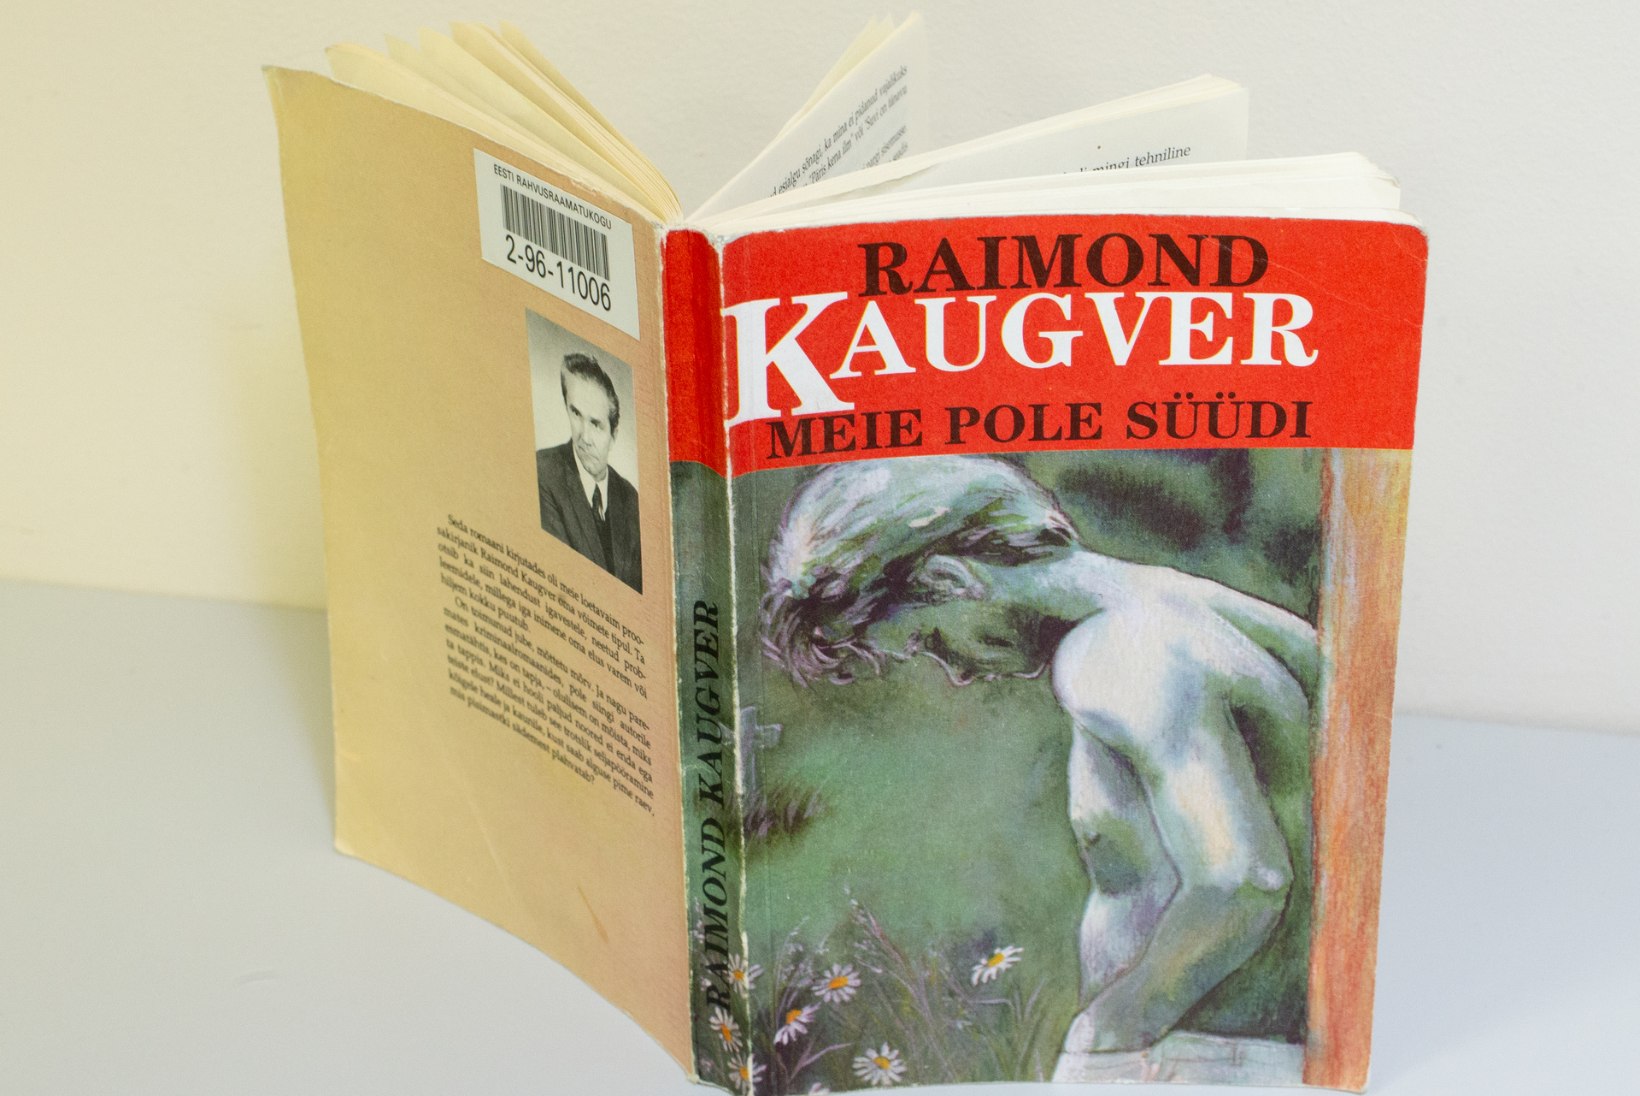 Raimond Kaugveri paralleelelud: naised, viin ja amputeeritud jalg, teisalt ürgne loojaanne, menukirjaniku staatus ja tohutud tiraažid